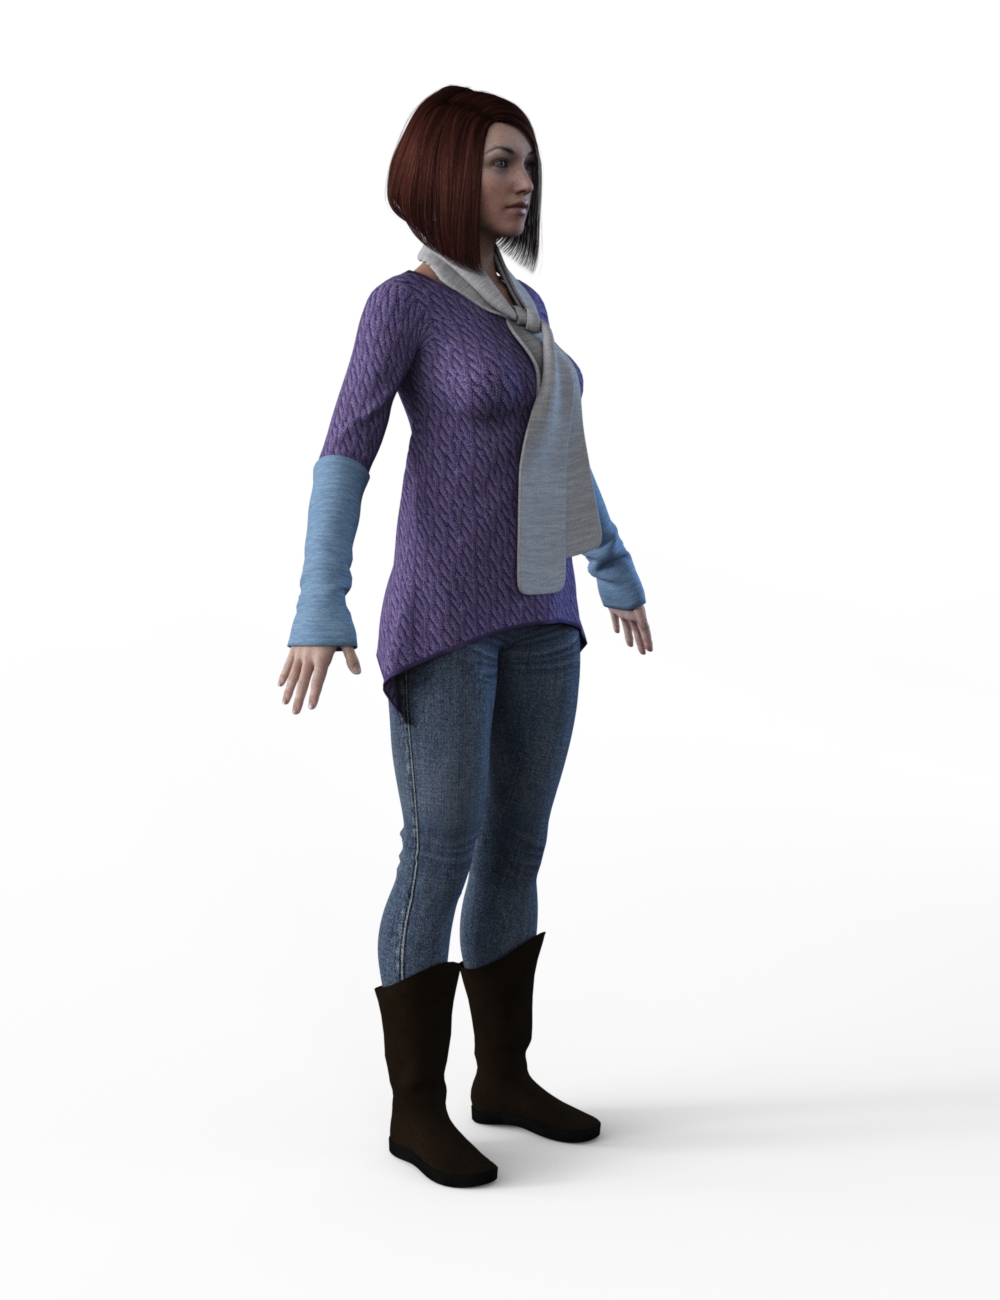 FBX- Base Female Frosty Winter Outfit by: Paleo, 3D Models by Daz 3D